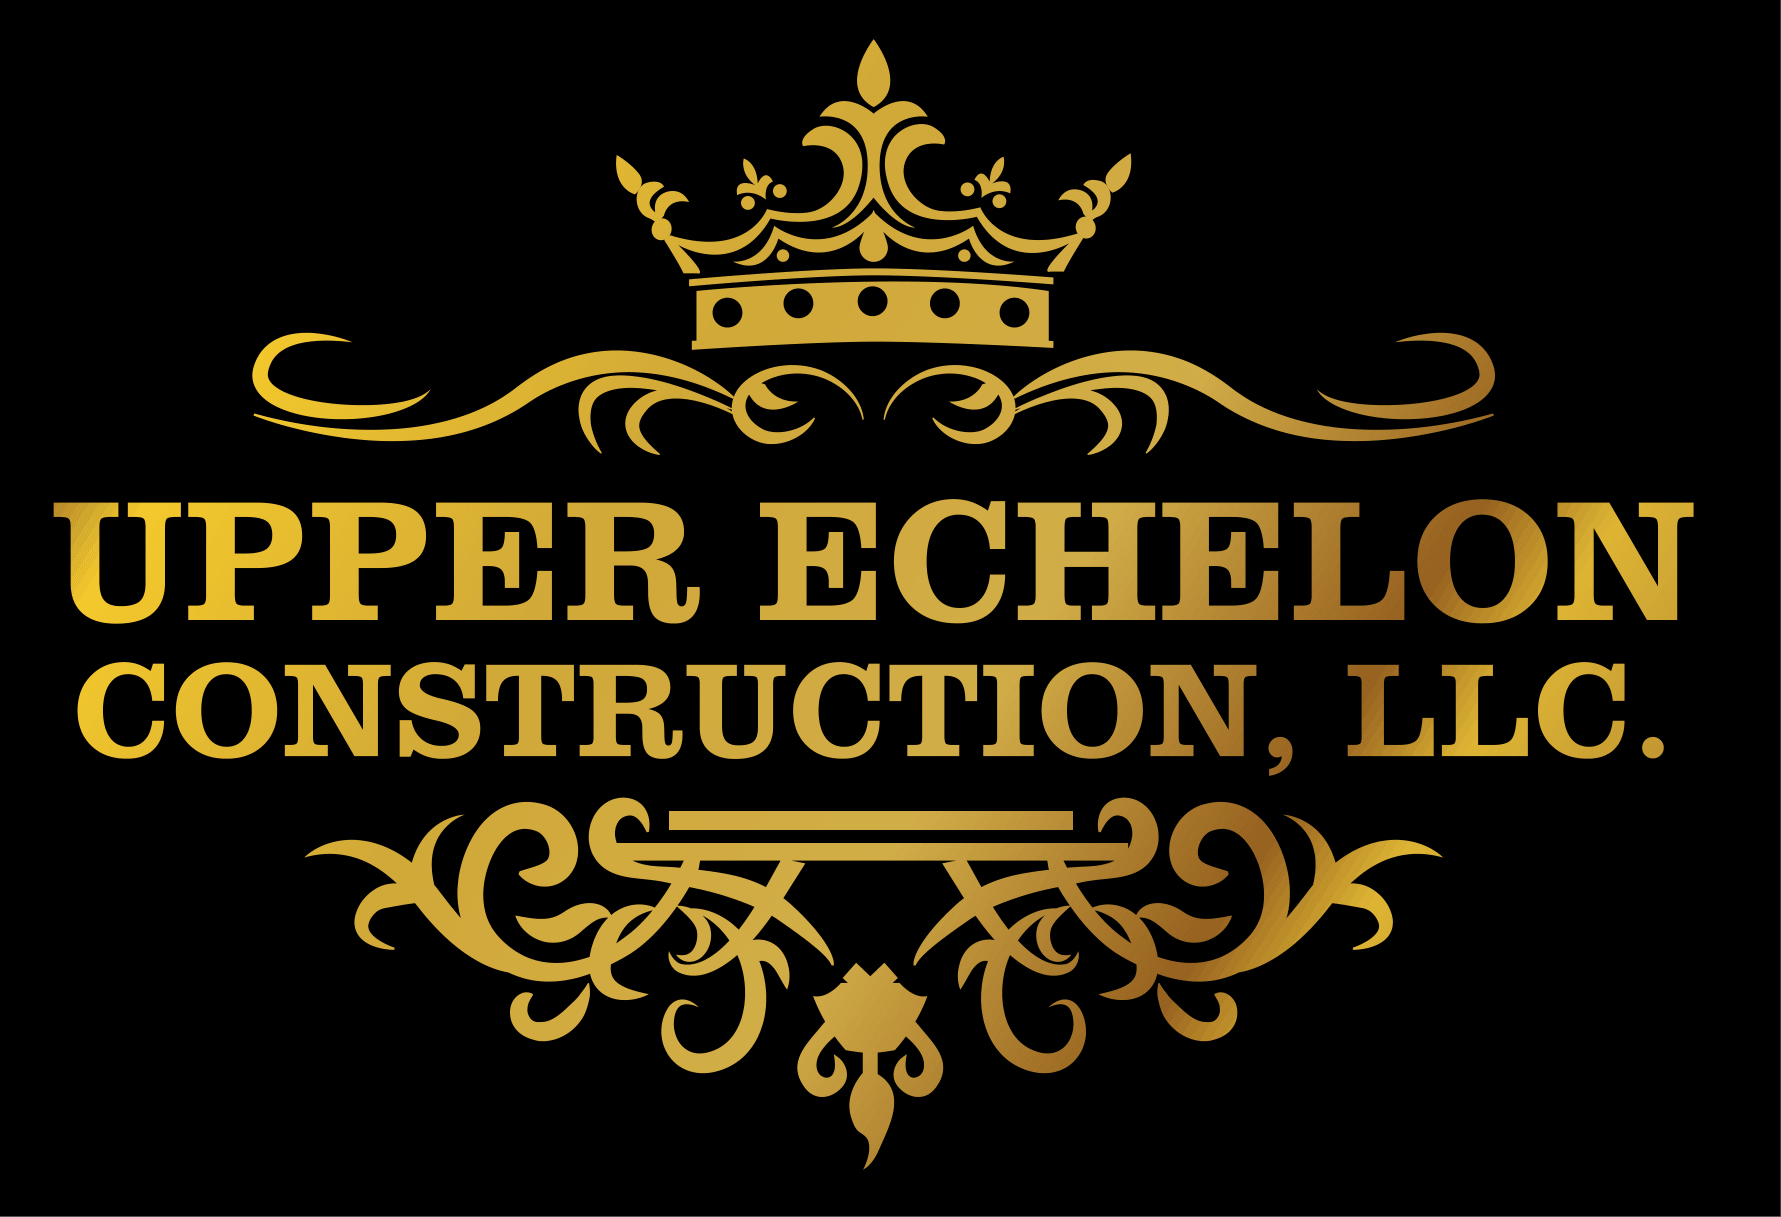 Upper Echelon Construction